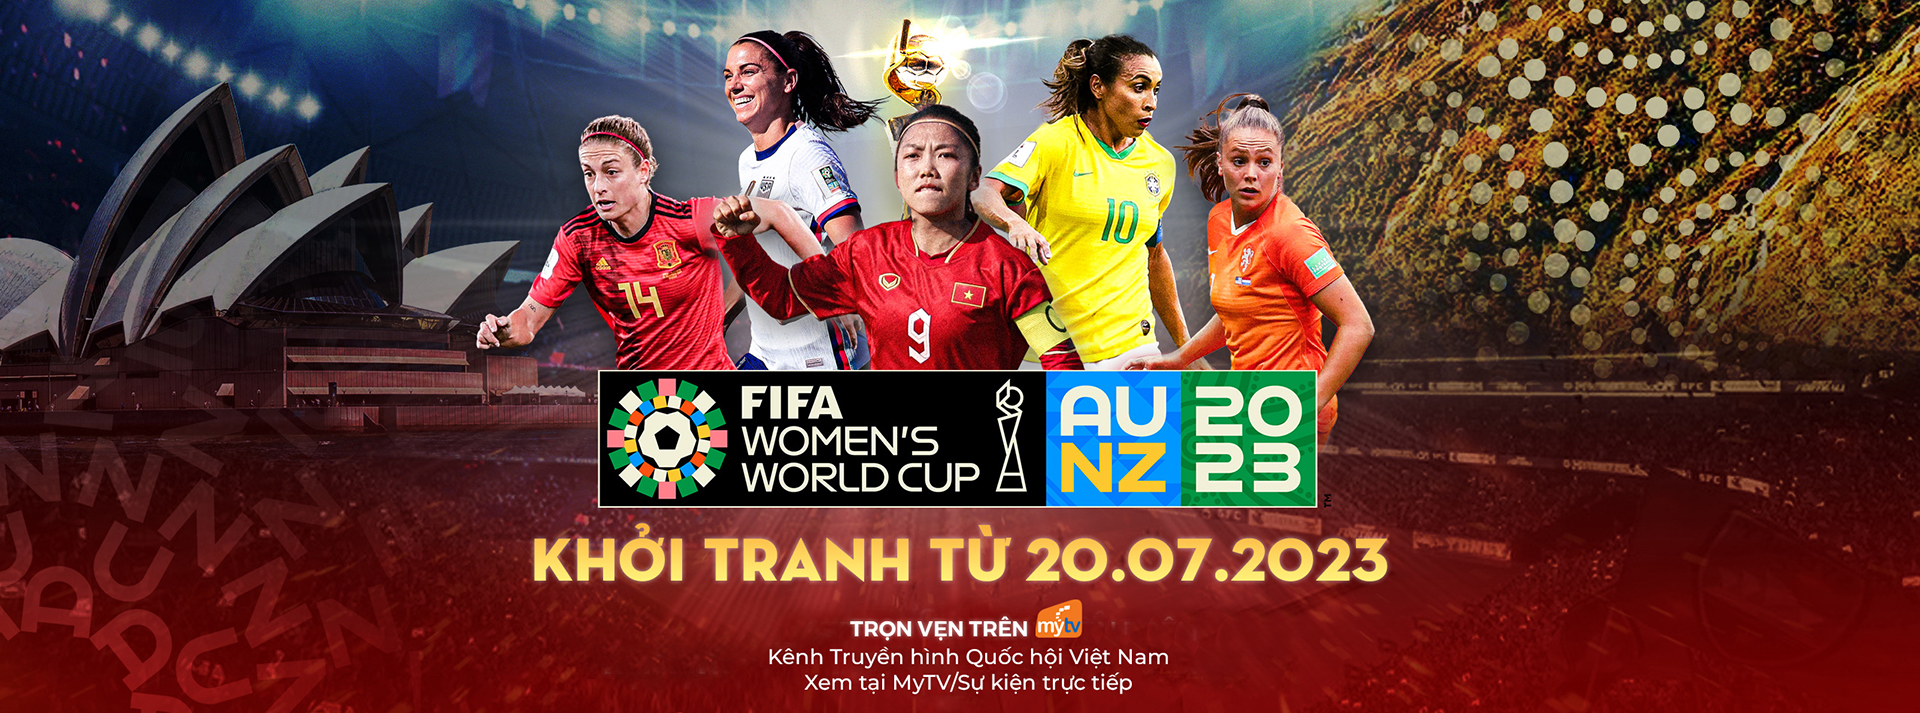 Xem trực tiếp và trọn vẹn FIFA World Cup nữ 2023 trên Truyền hình MyTV